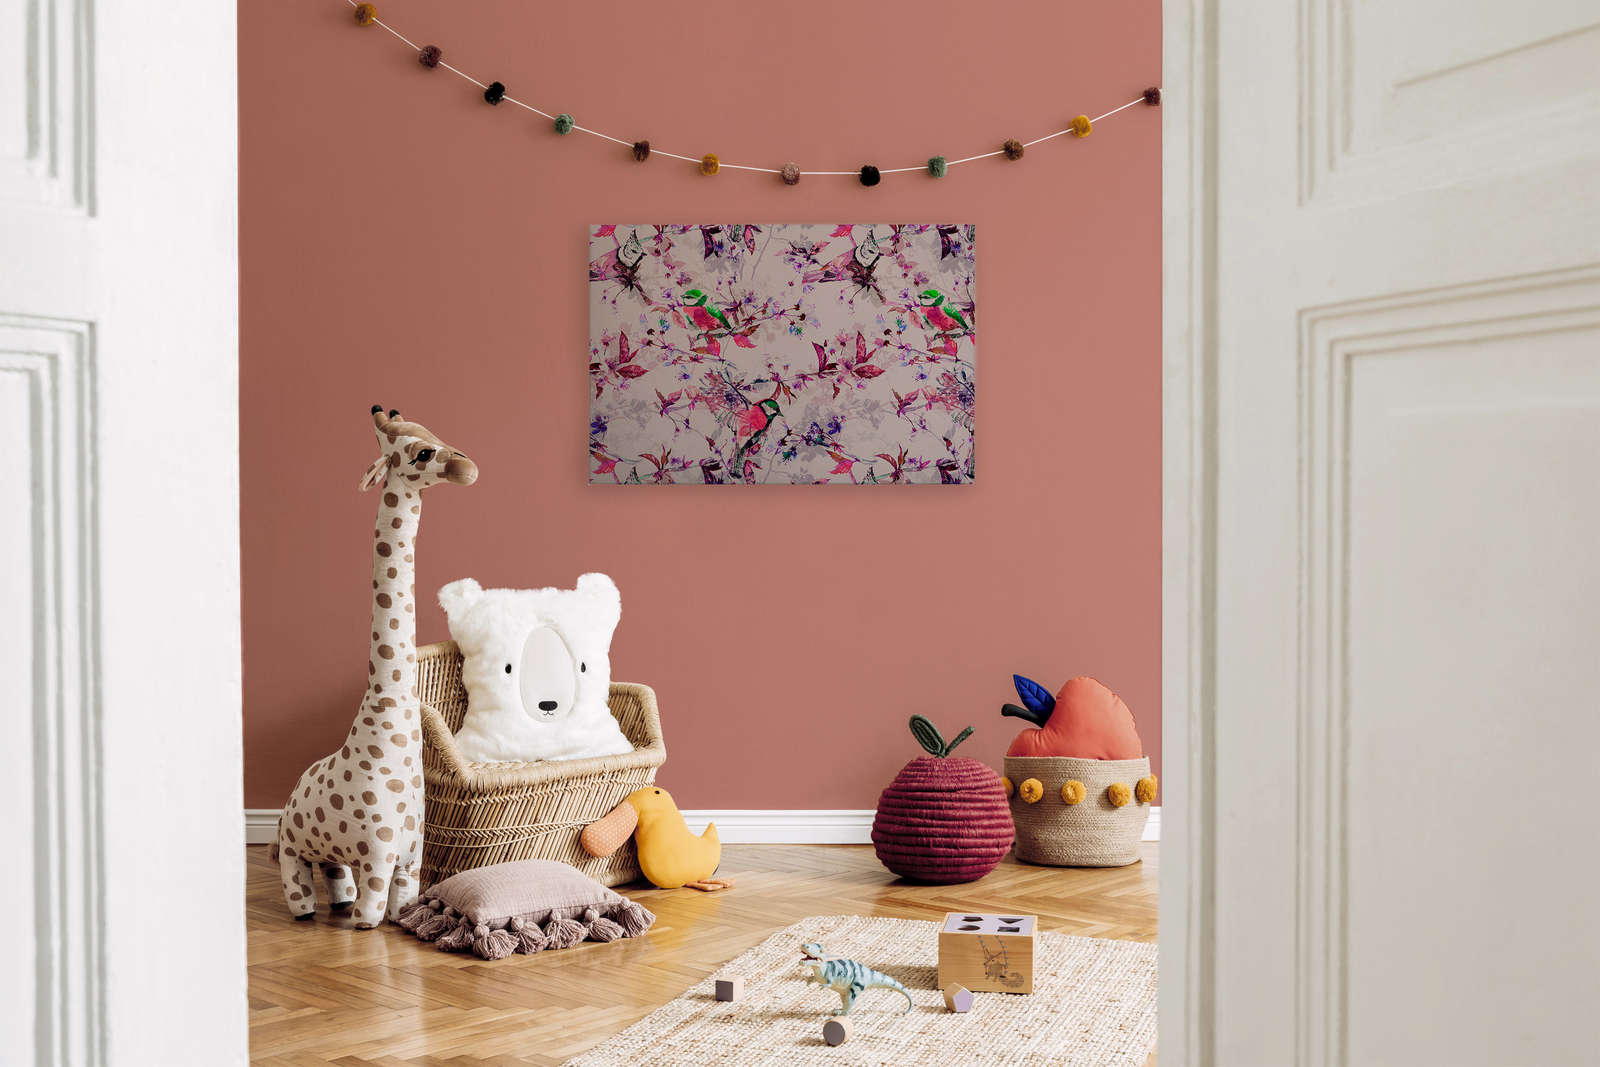             Uccelli Pittura su tela in stile collage | rosa, blu - 0,90 m x 0,60 m
        